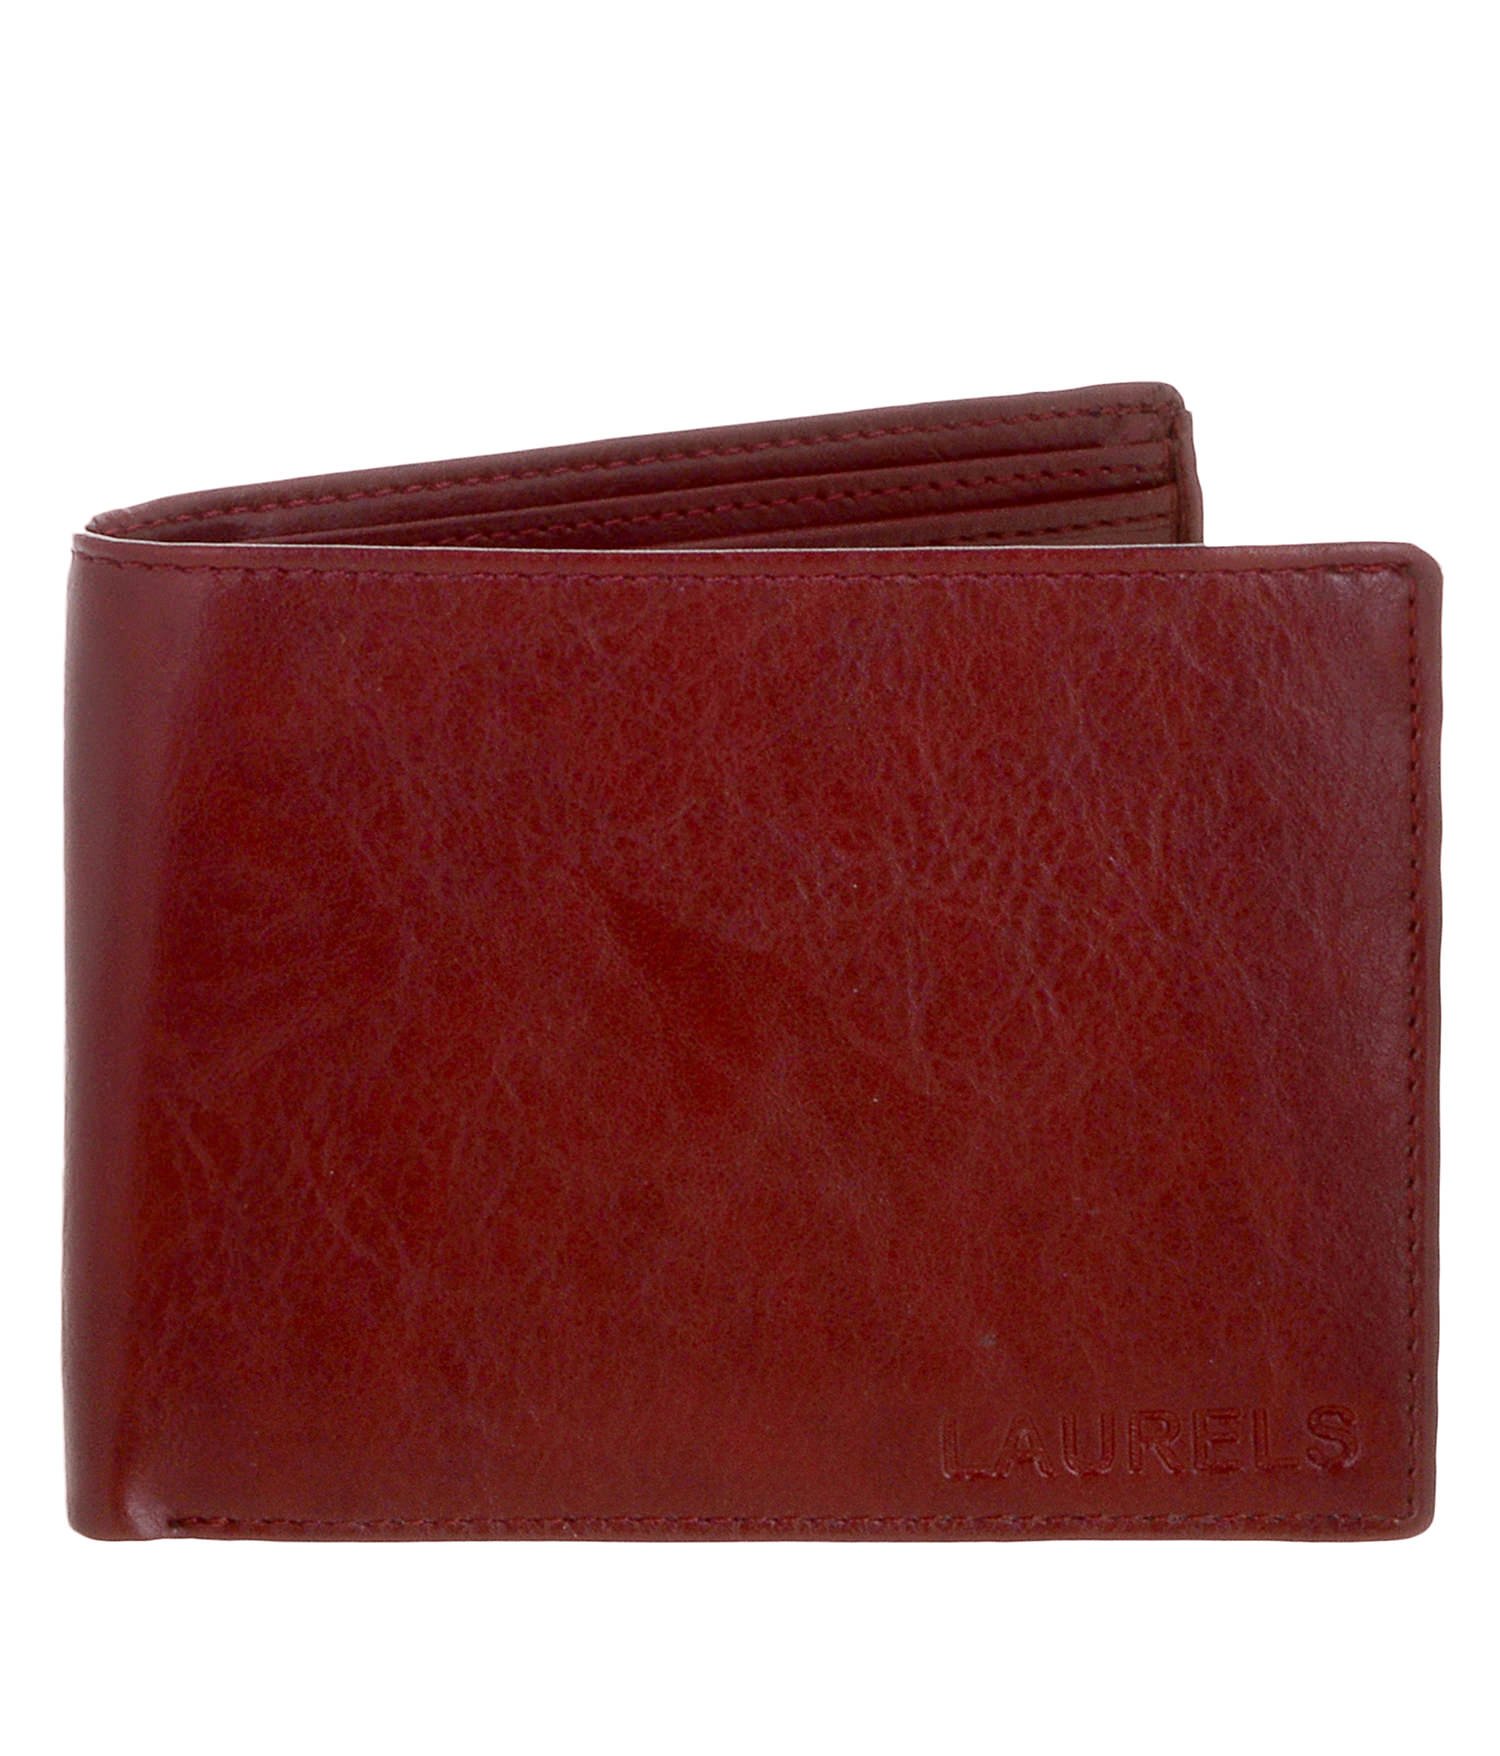 Buy Hammonds Flycatcher HAMMONDS FLYCATCHER Genuine Leather Wallet for Men,  Tan | RFID Protected Wallets for Men | Mens Wallet Bag with 14 Credit/Debit  @ ₹487.00